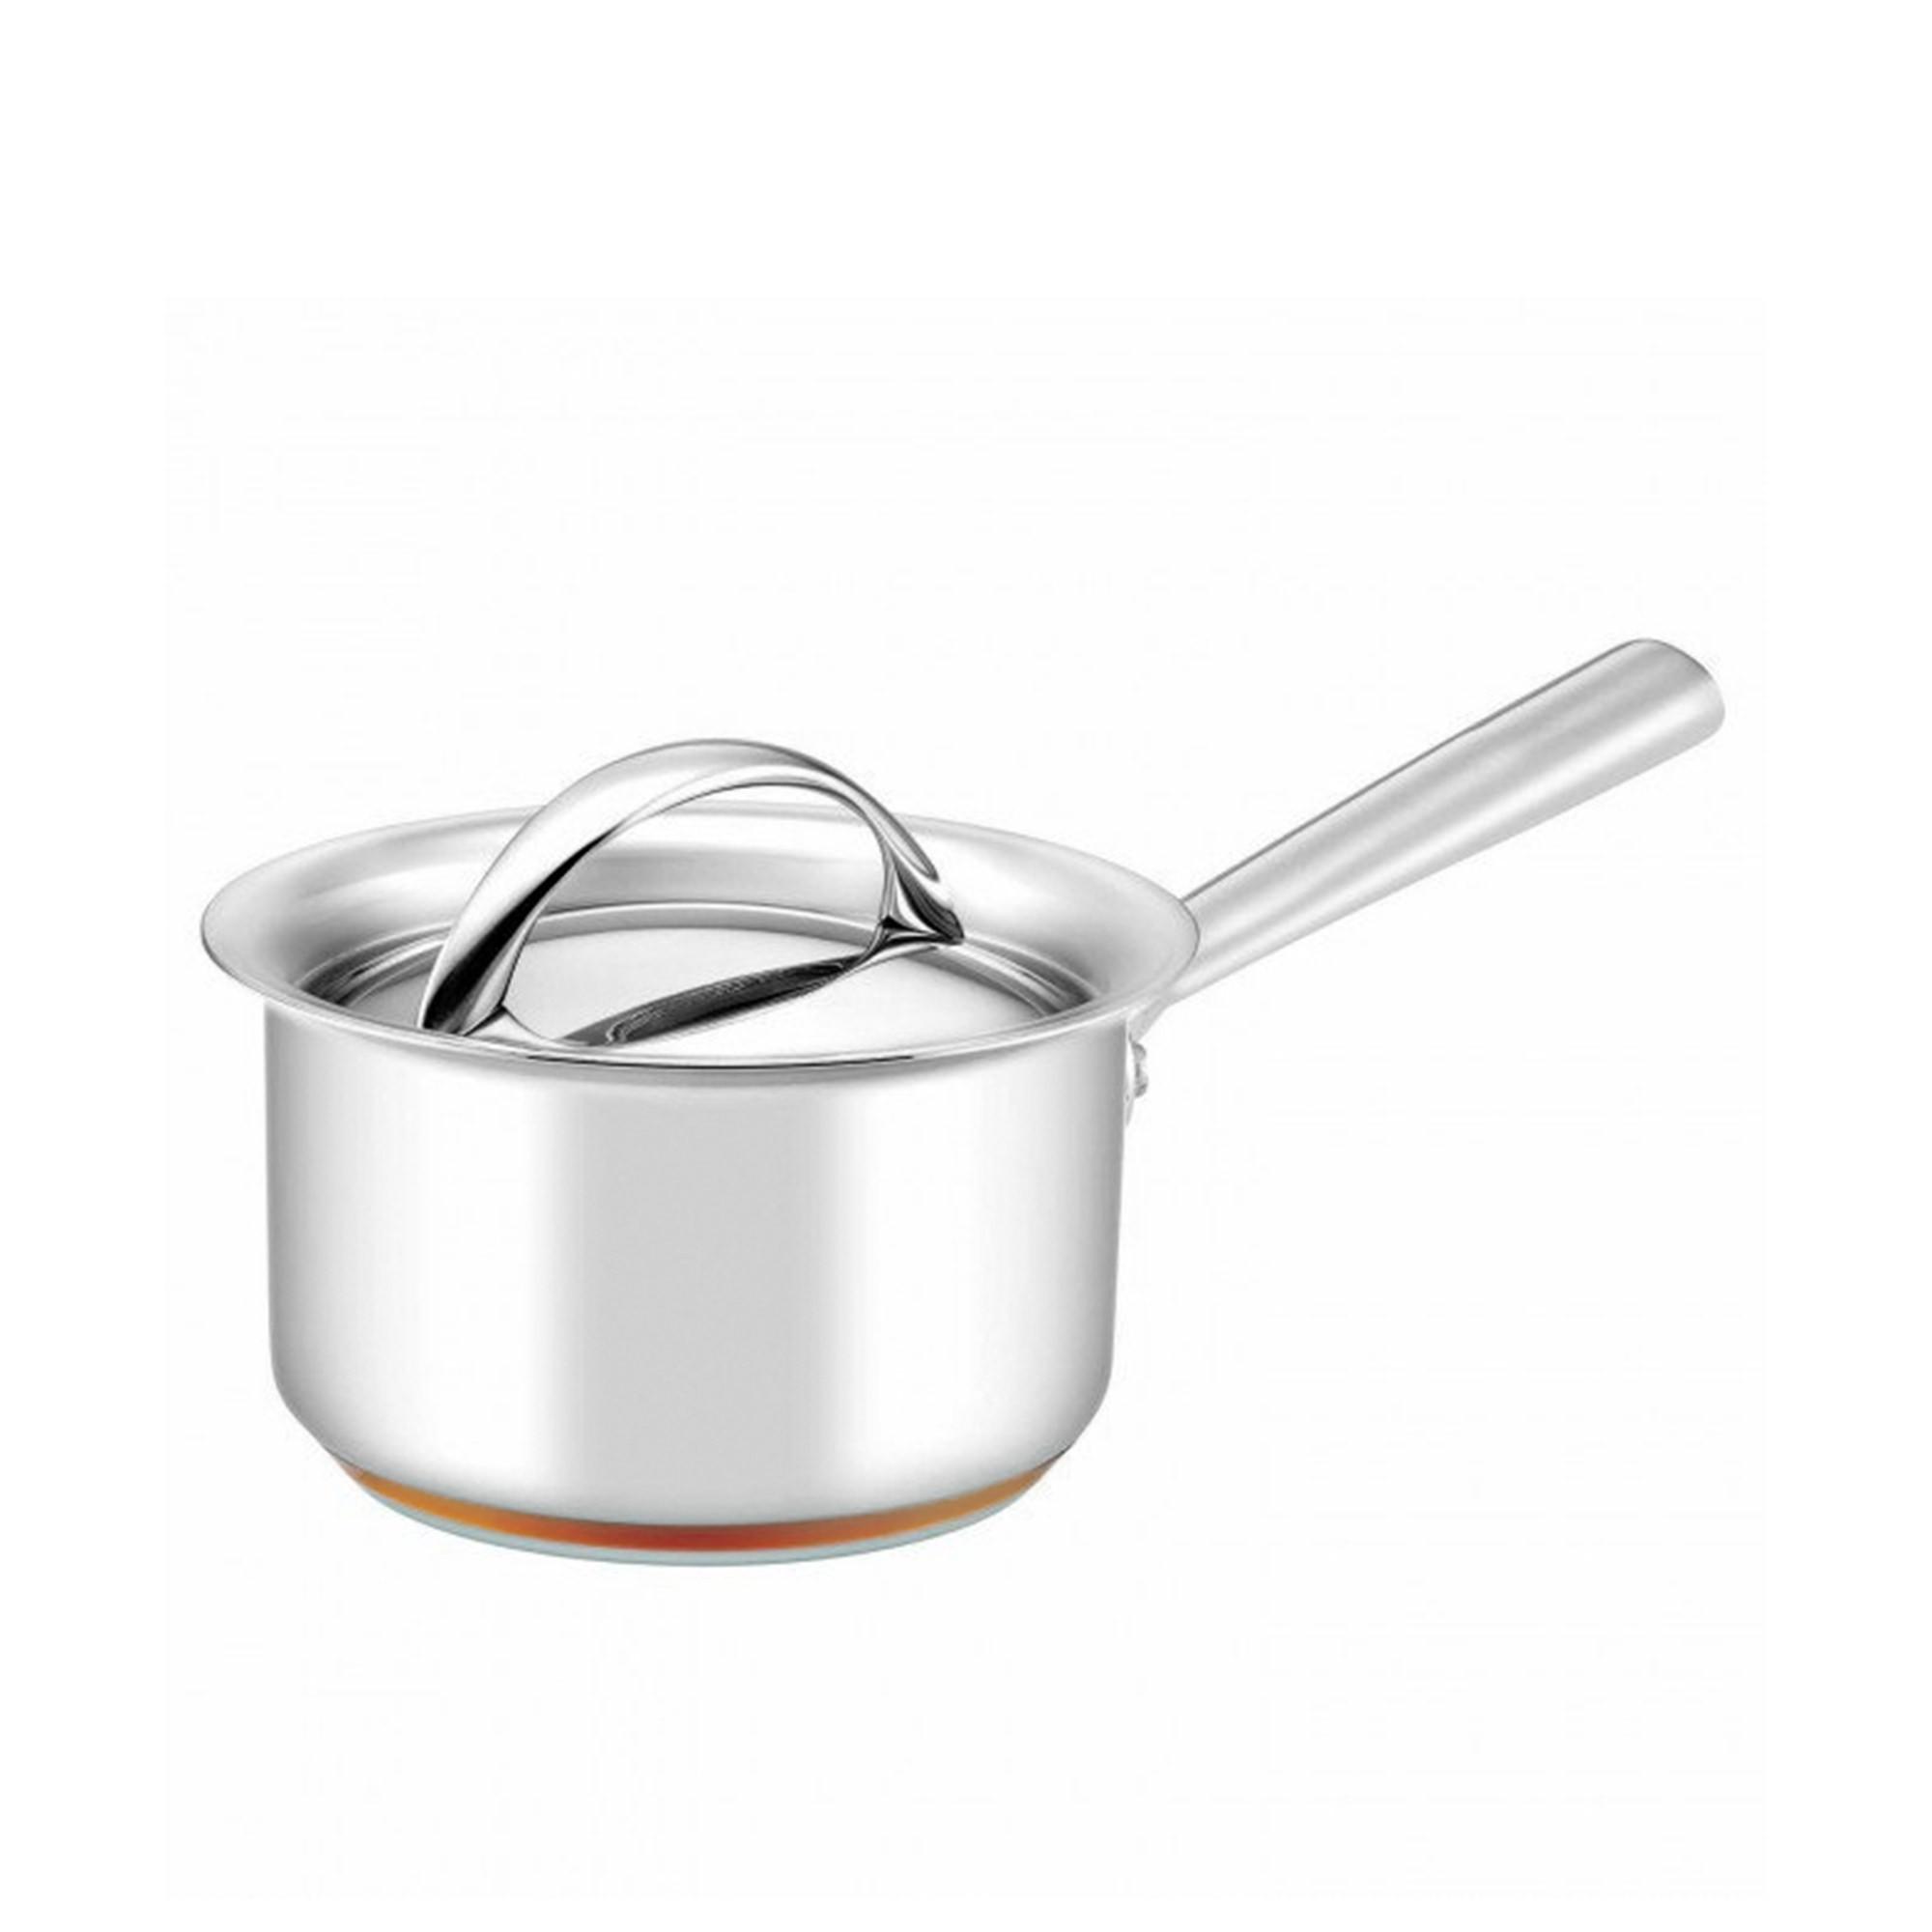 Essteele Per Vita 3pc Stainless Steel Cookware Set Image 4